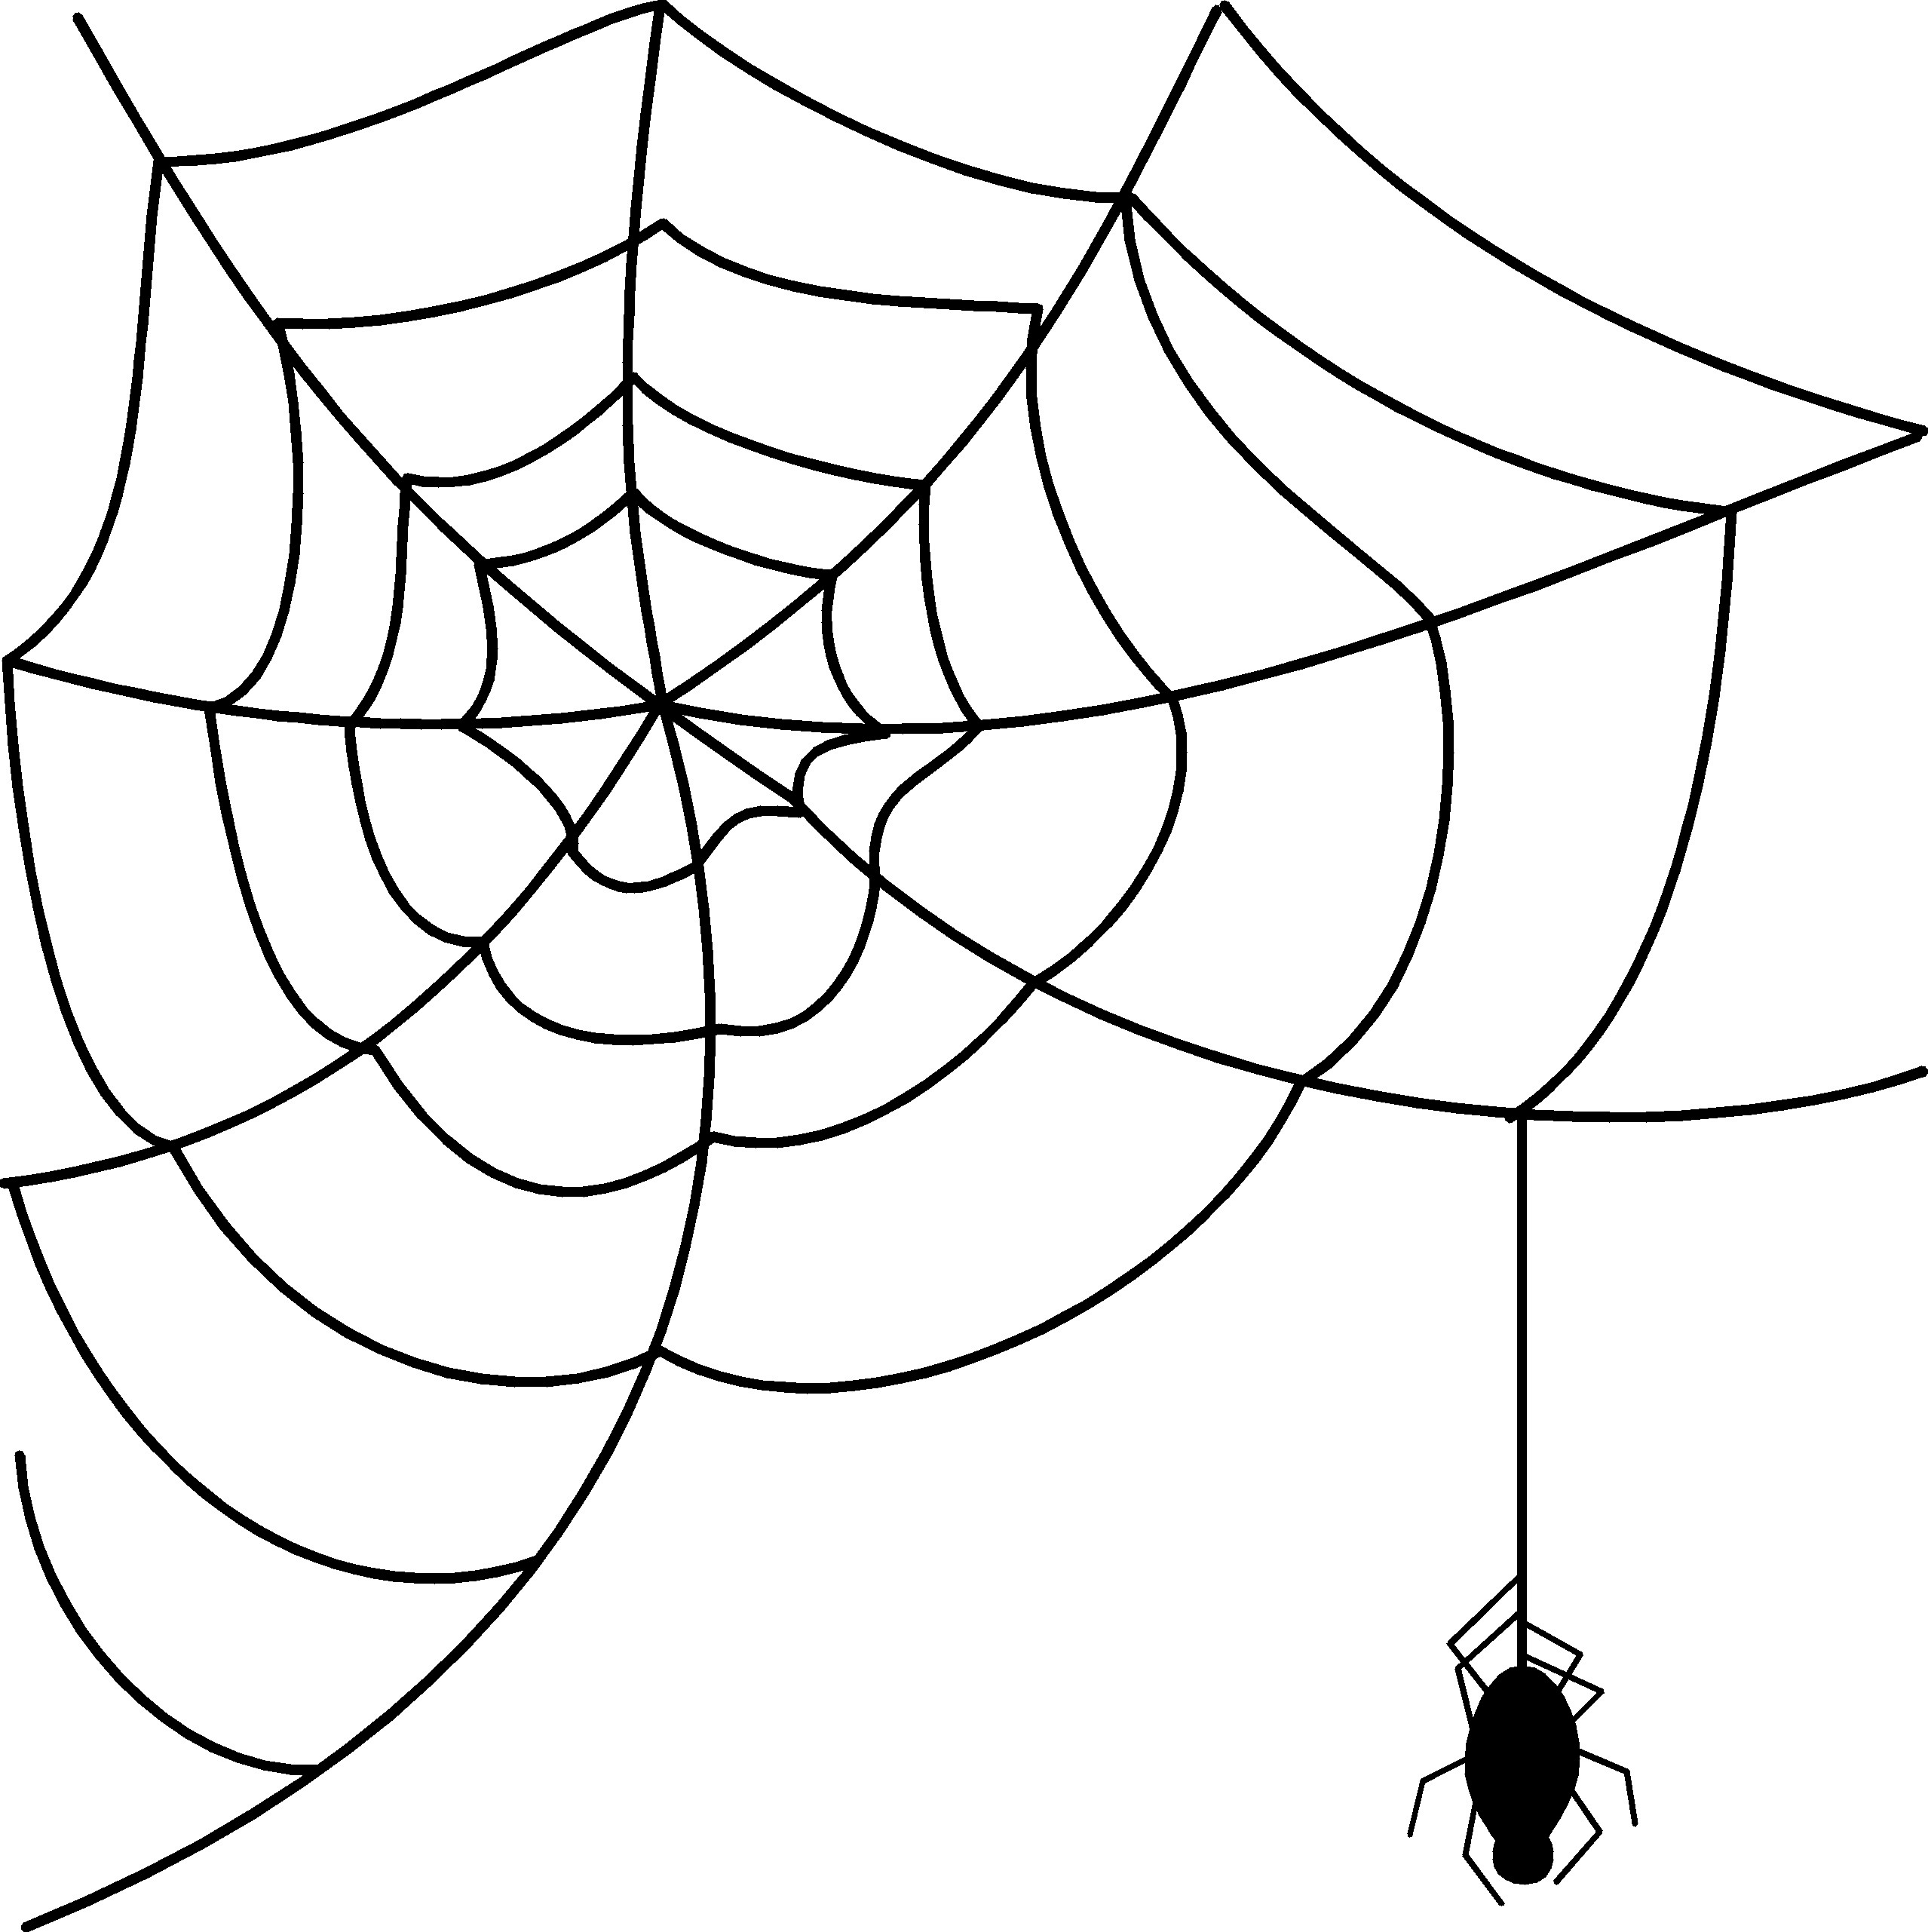 Cartoon spider web clipart - Cliparting.com